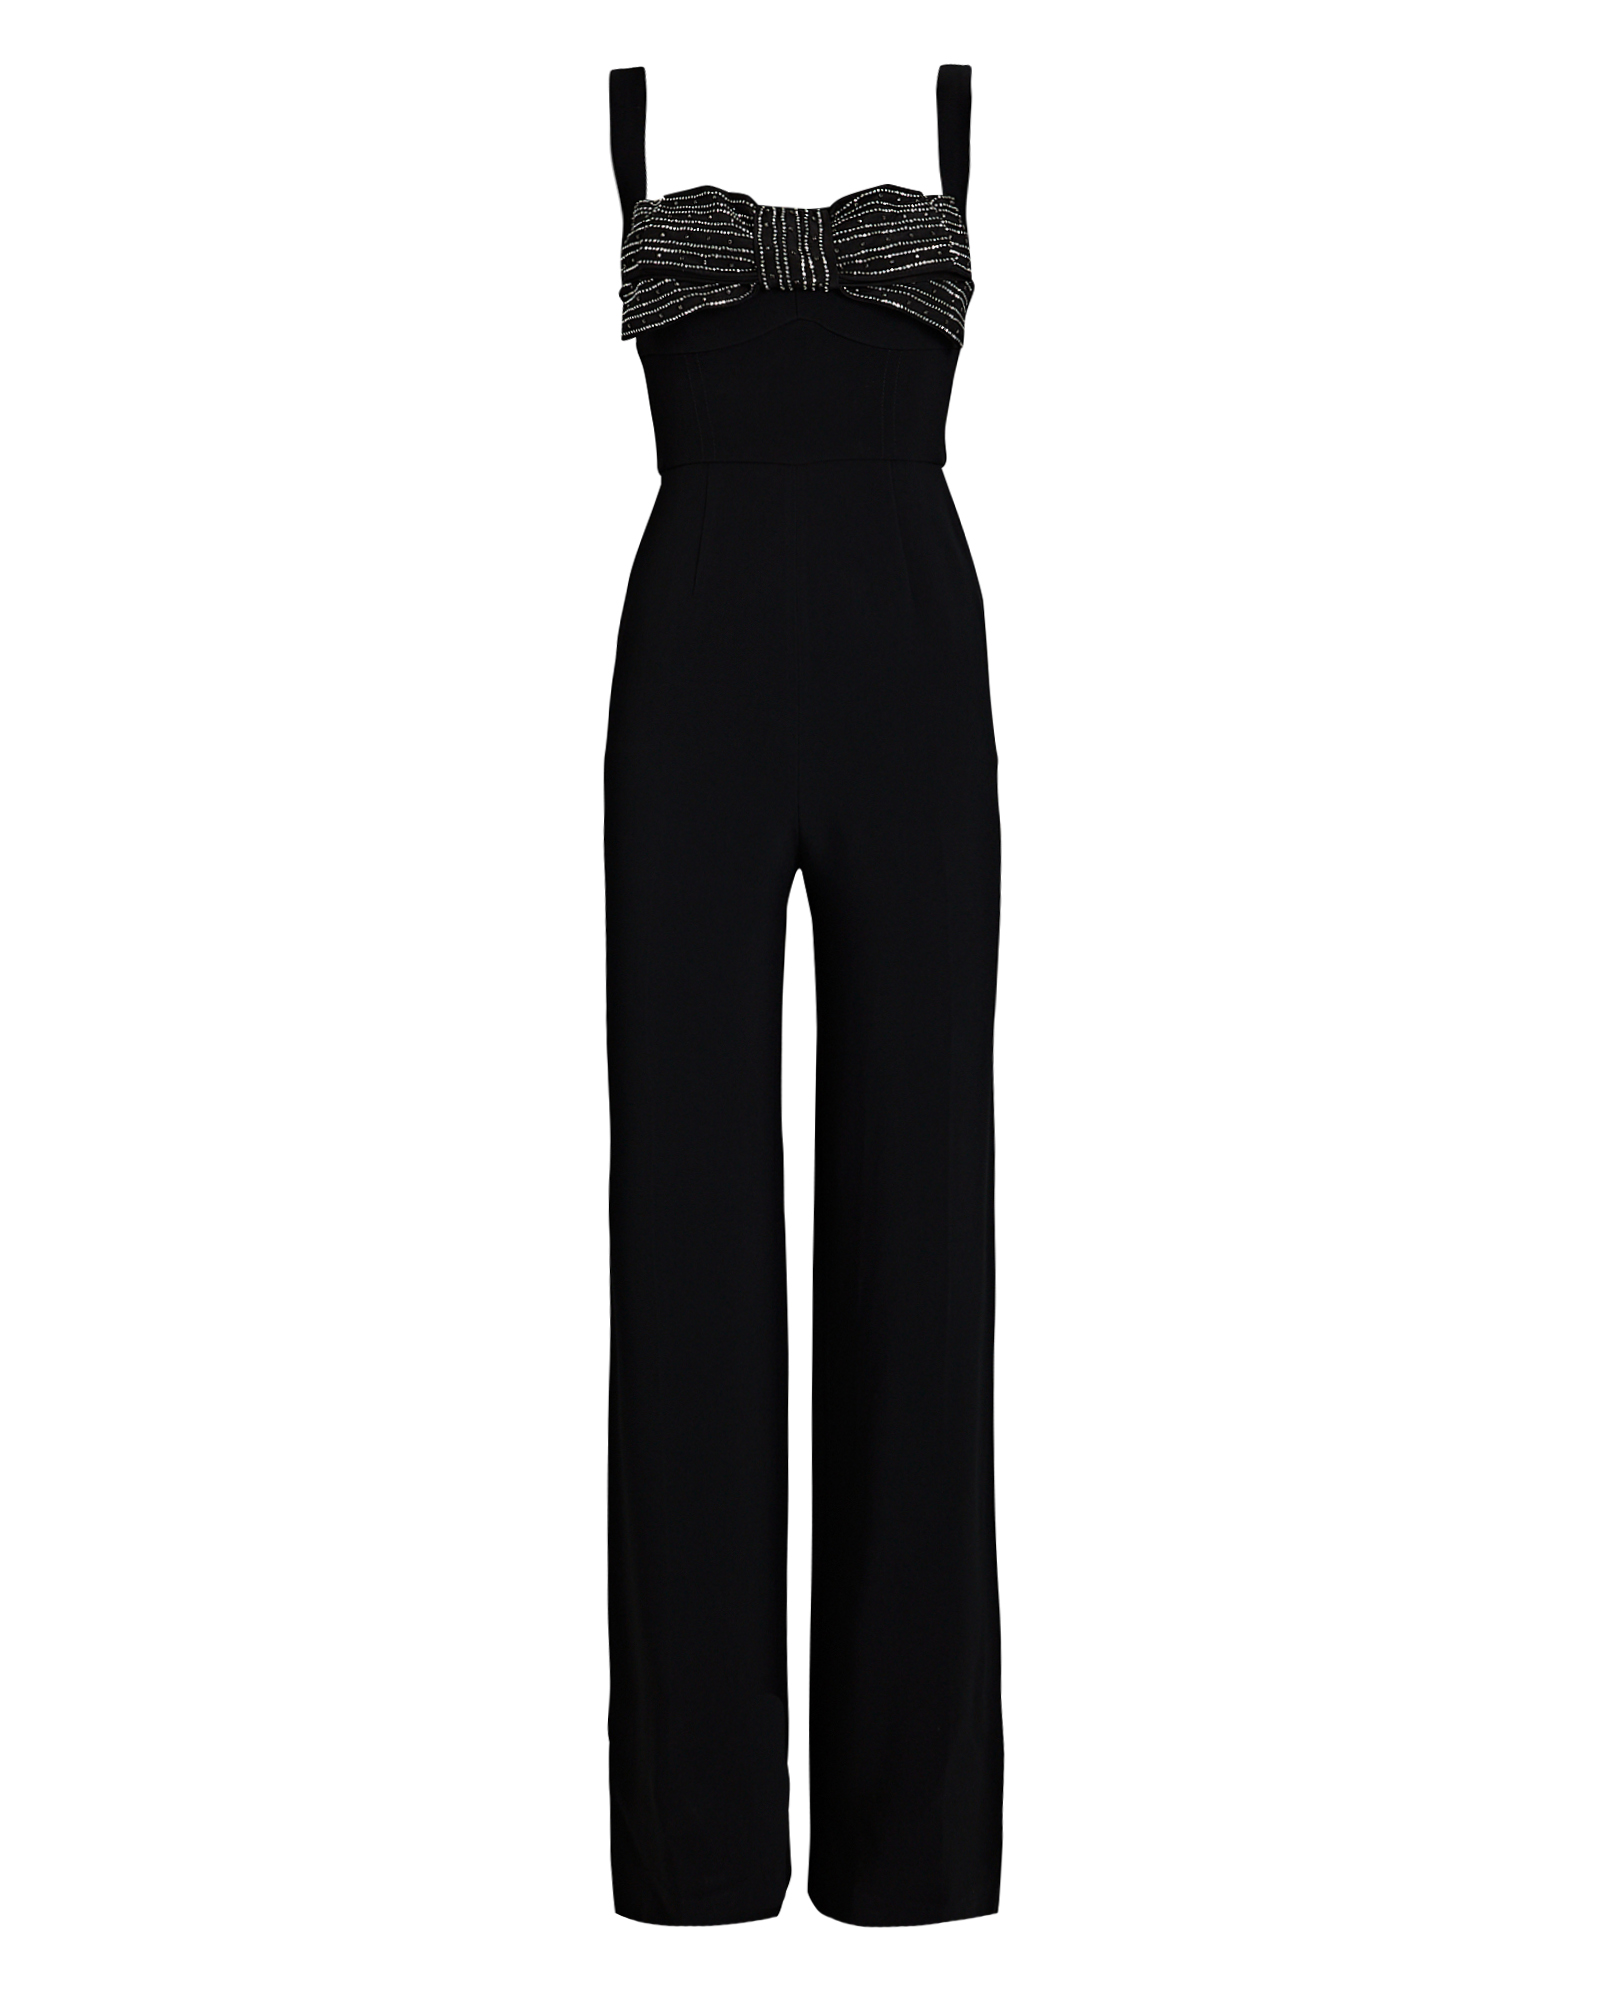 Saloni Rachel Bow Cady Jumpsuit In Black | INTERMIX®